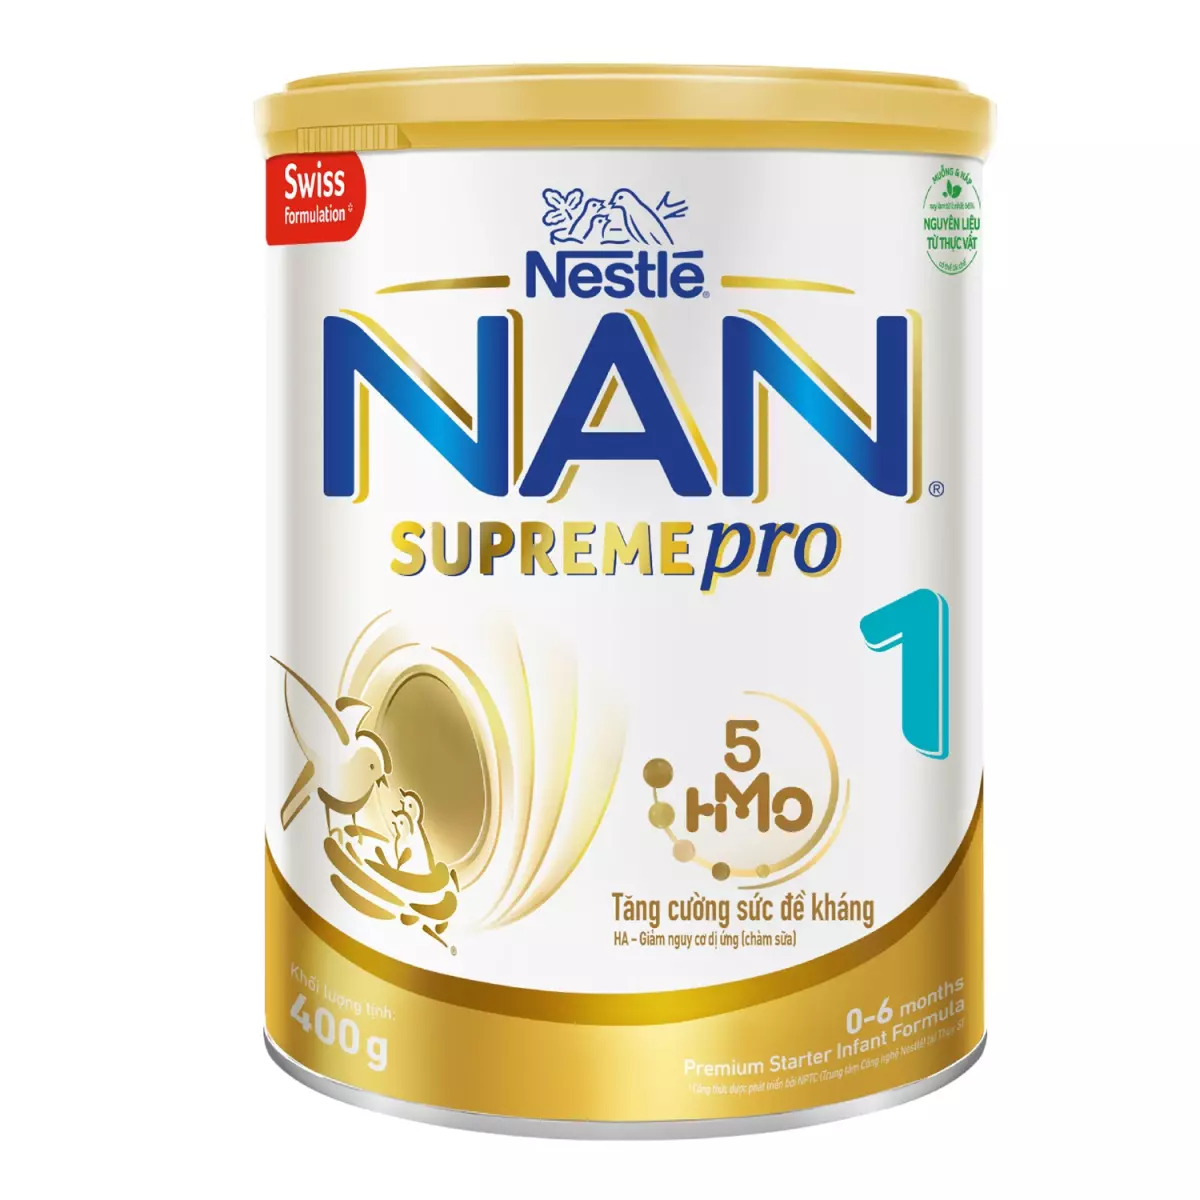 Hình ảnh sữa Nan Supreme Số 1 5HMO 400g New